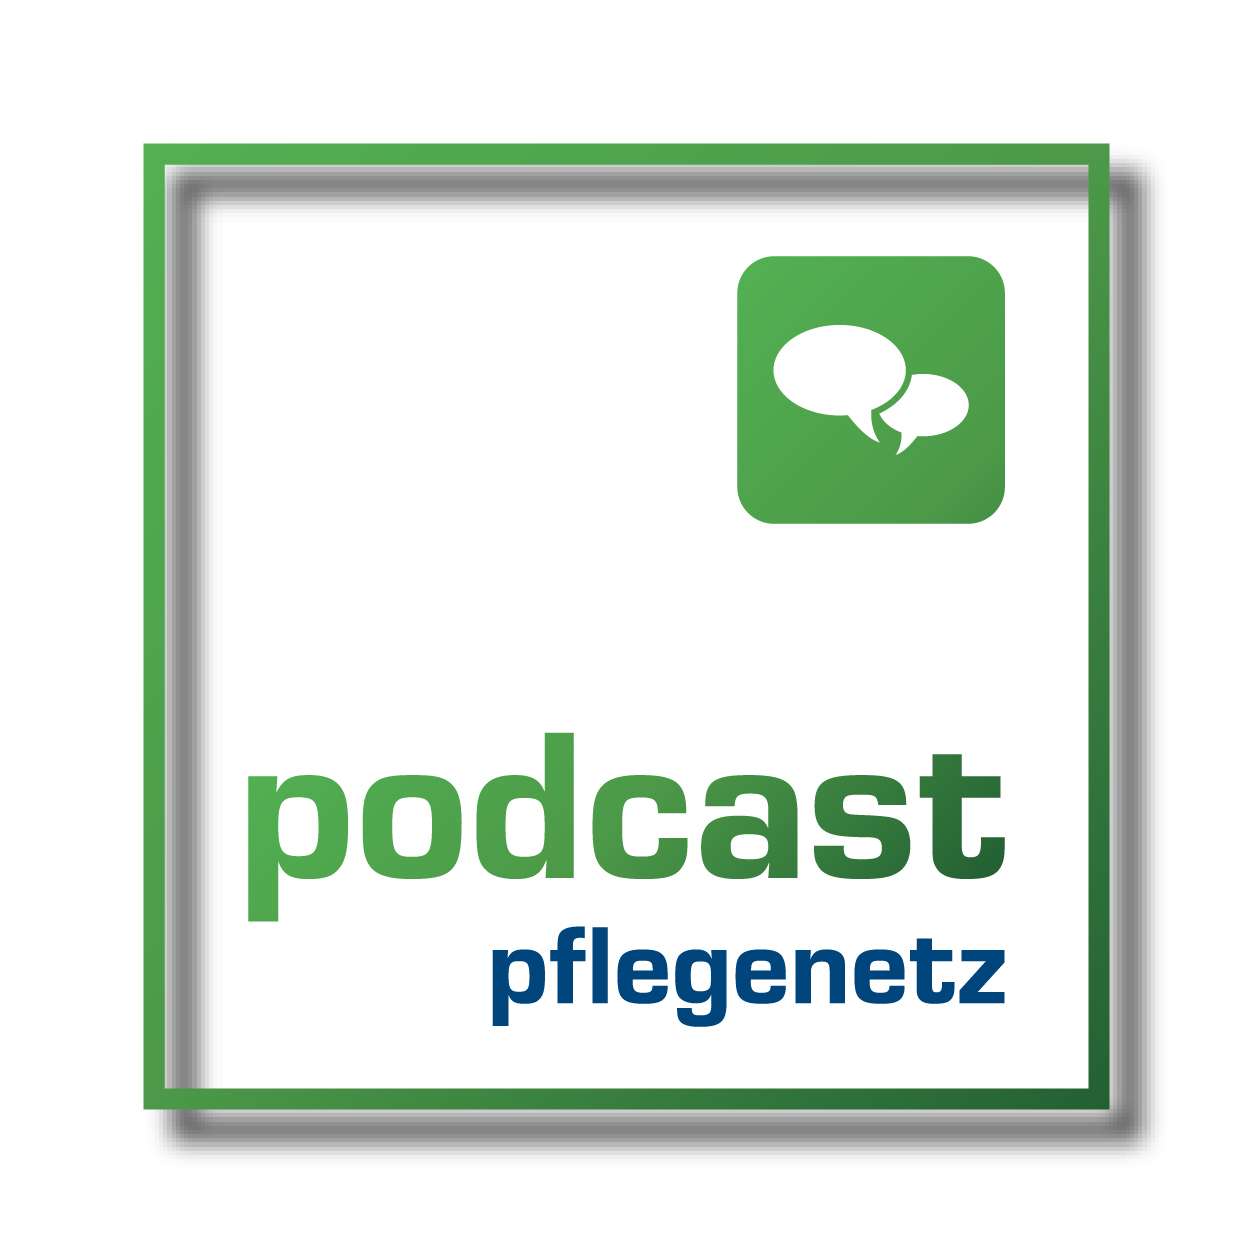 pflegenetz_podcast_logo